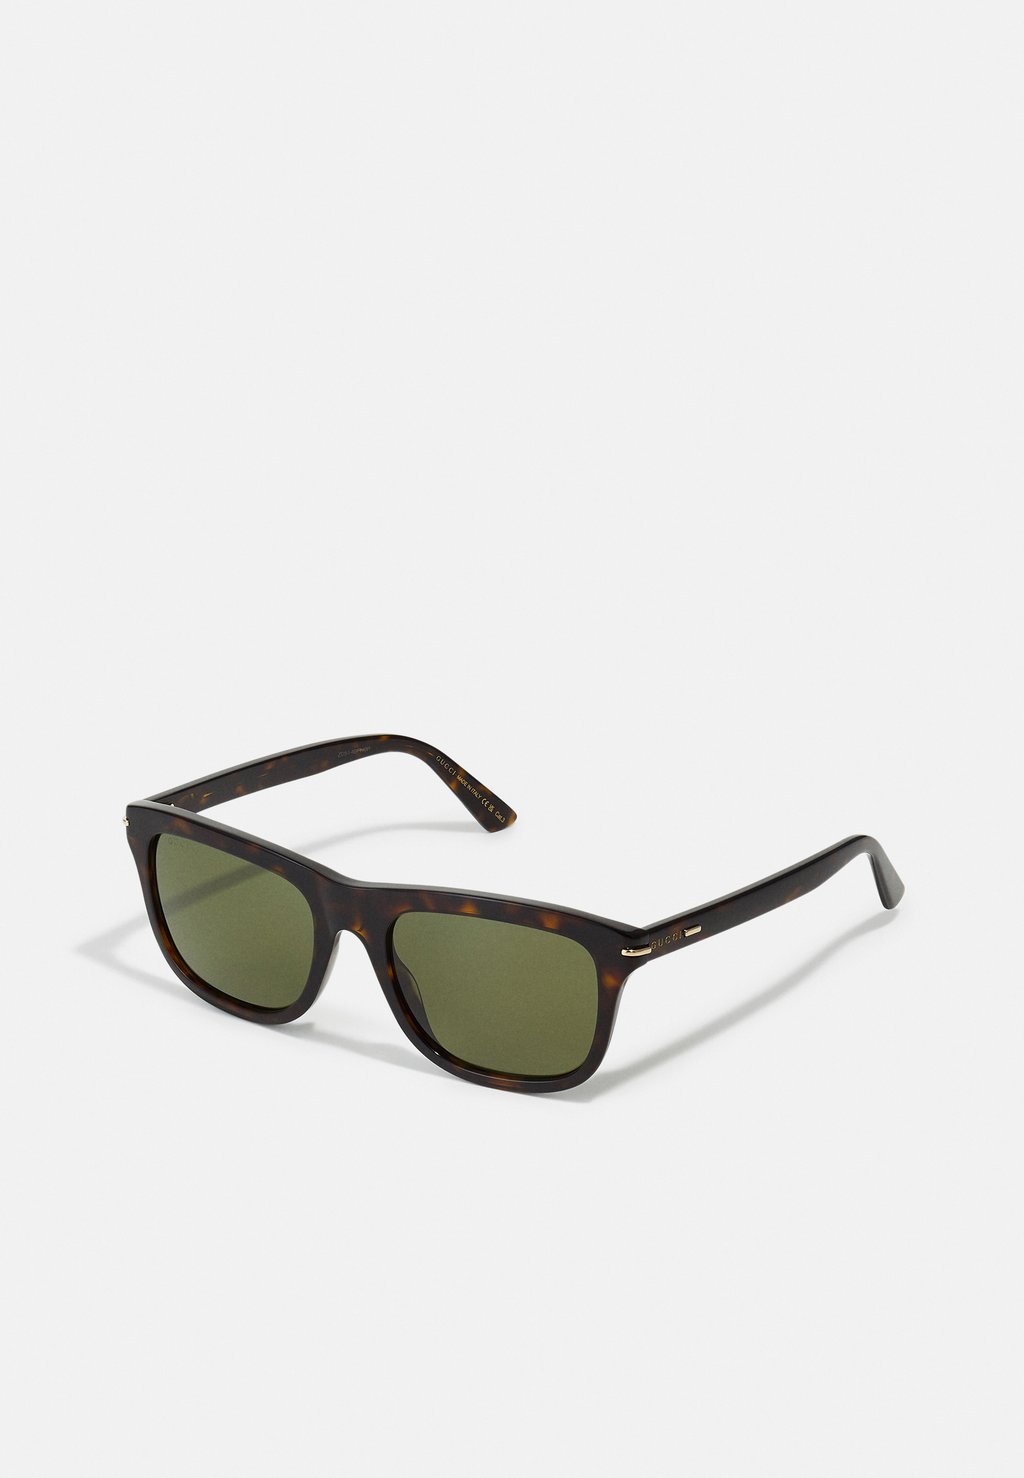 Солнцезащитные очки Gucci, гавана/зеленый